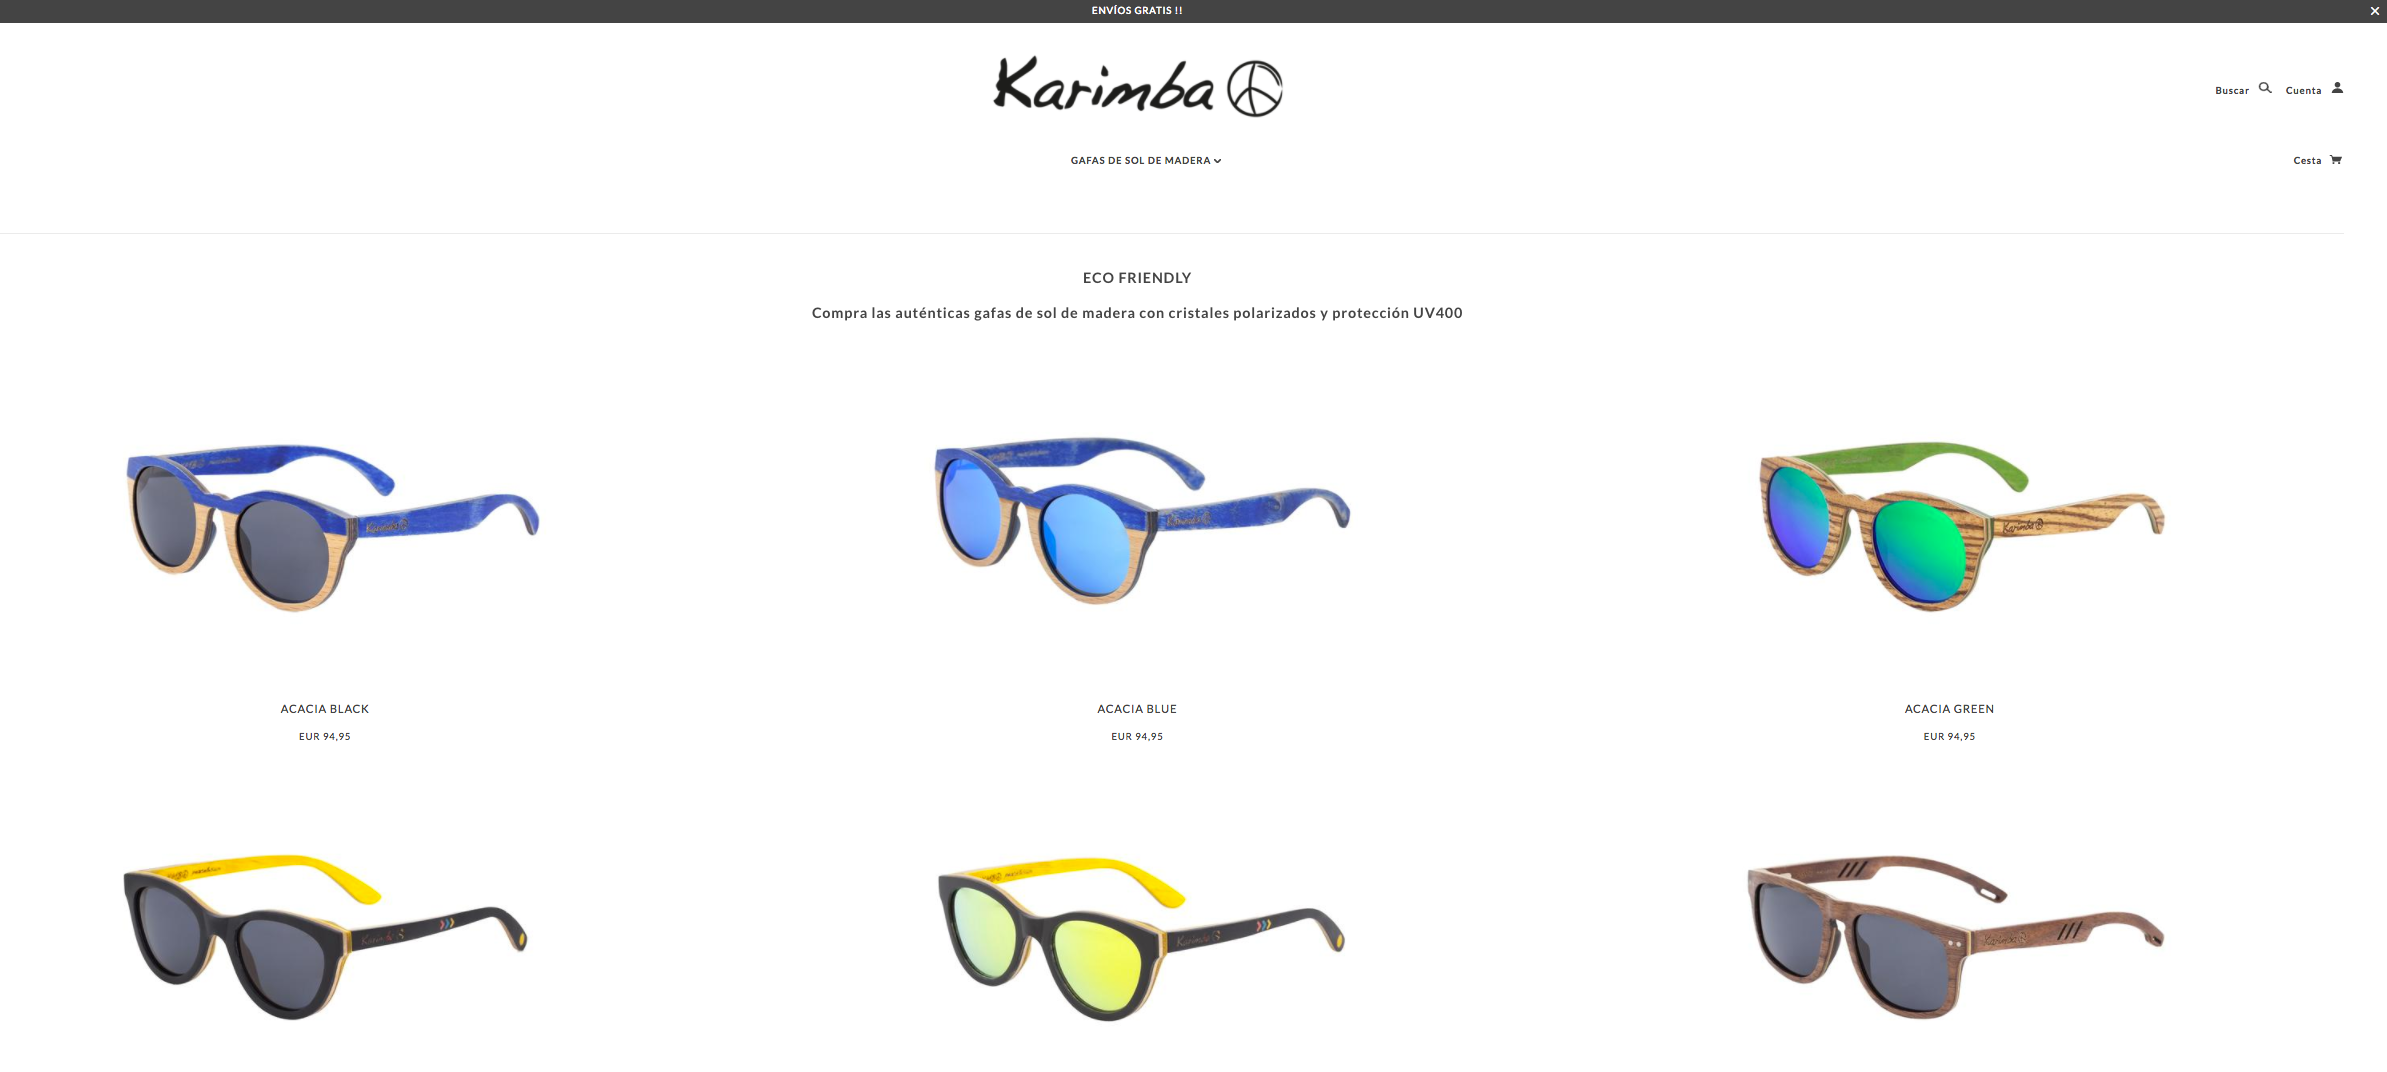 Karimba sunglasses